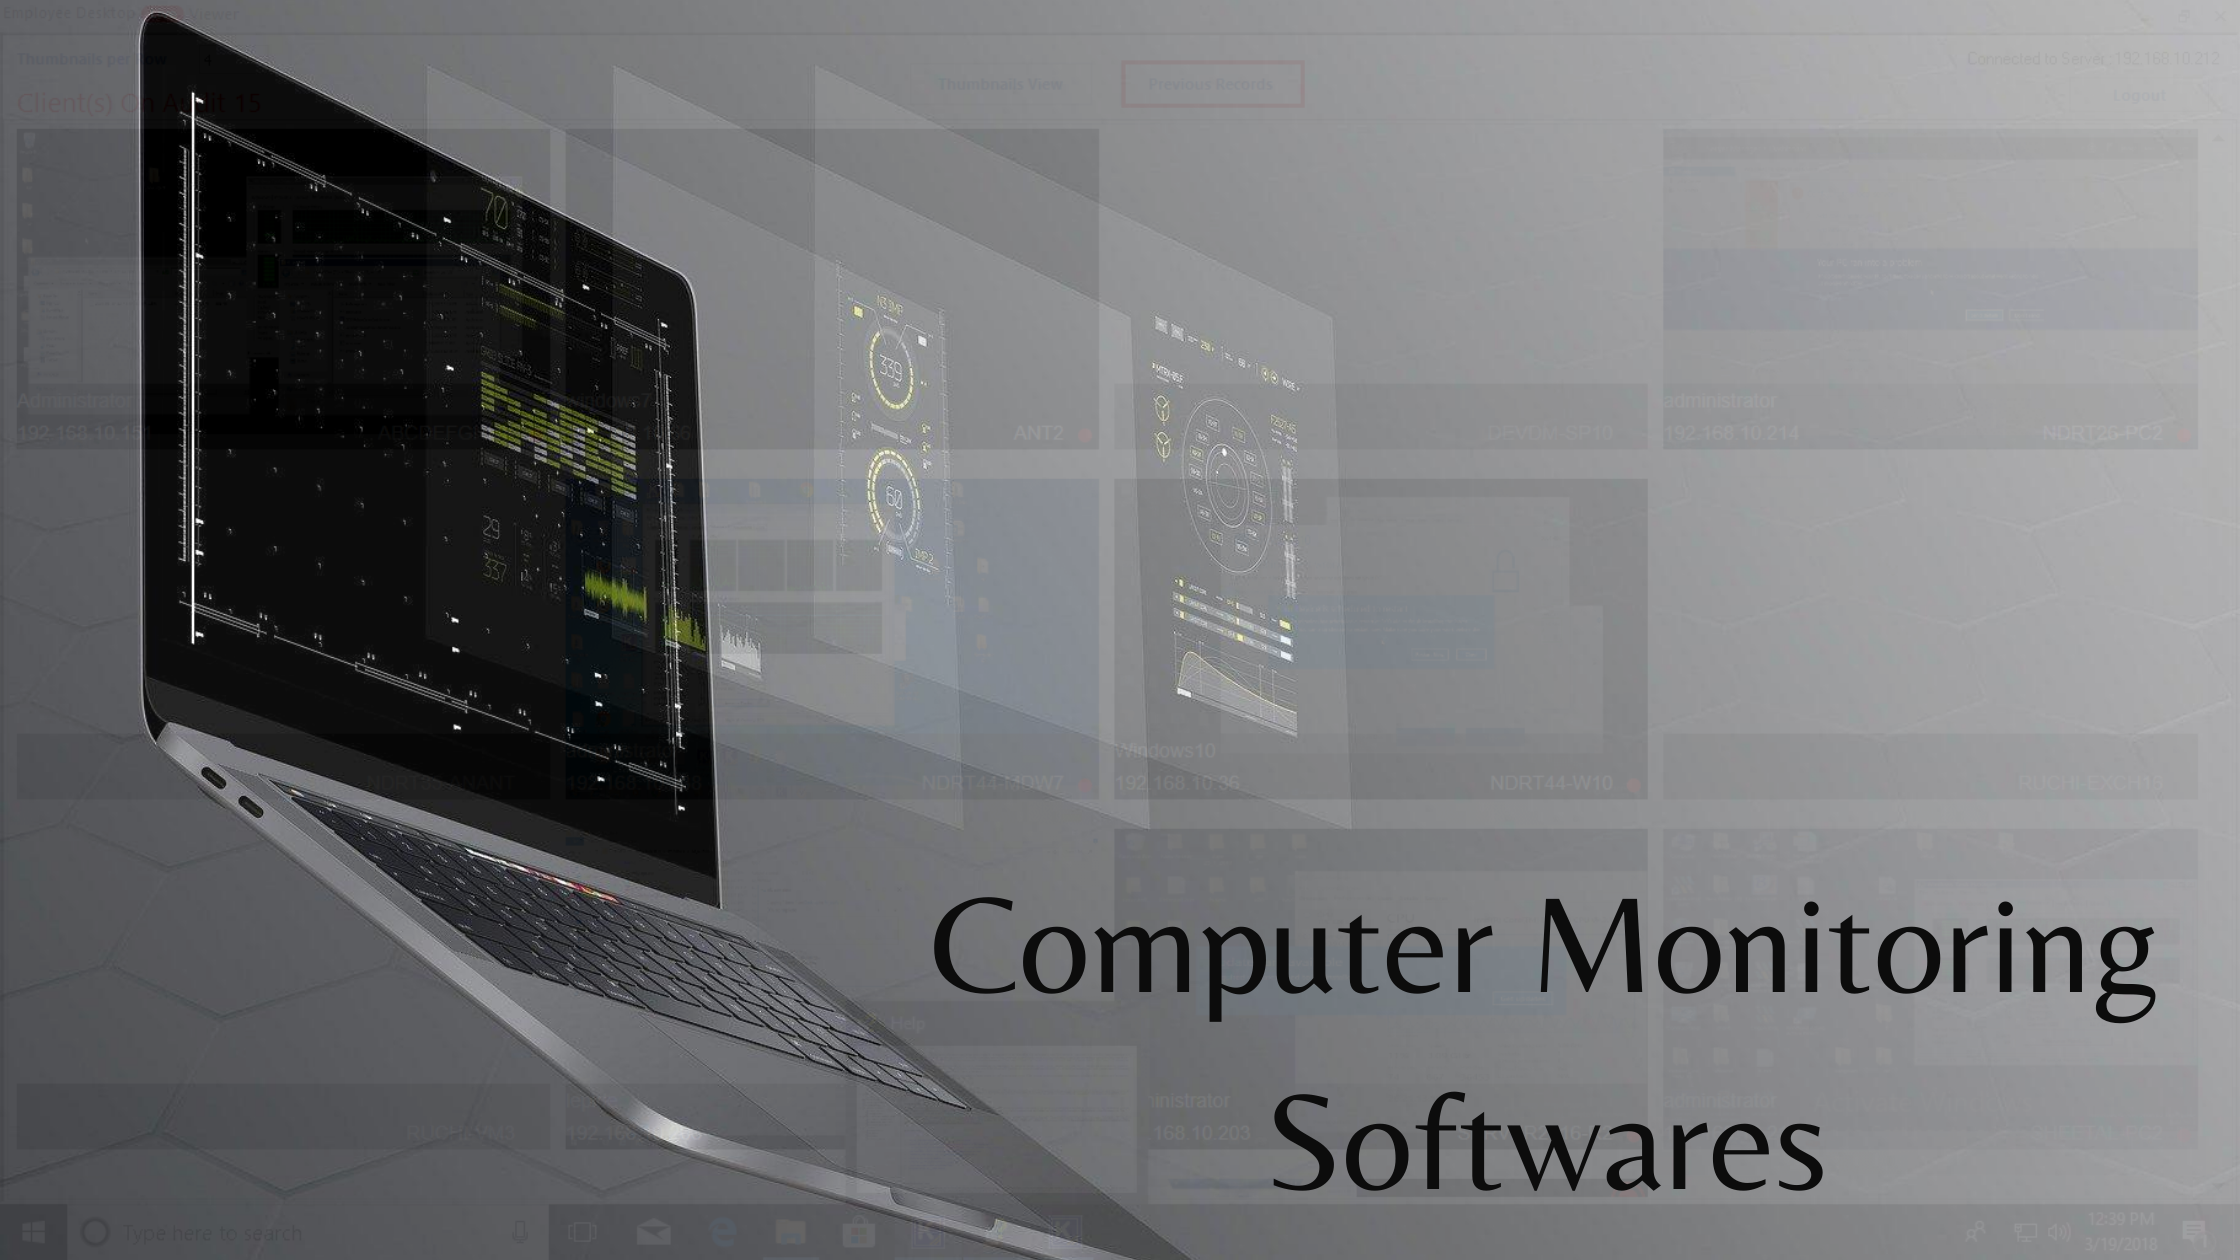 Computer Monitoring Softwares.png